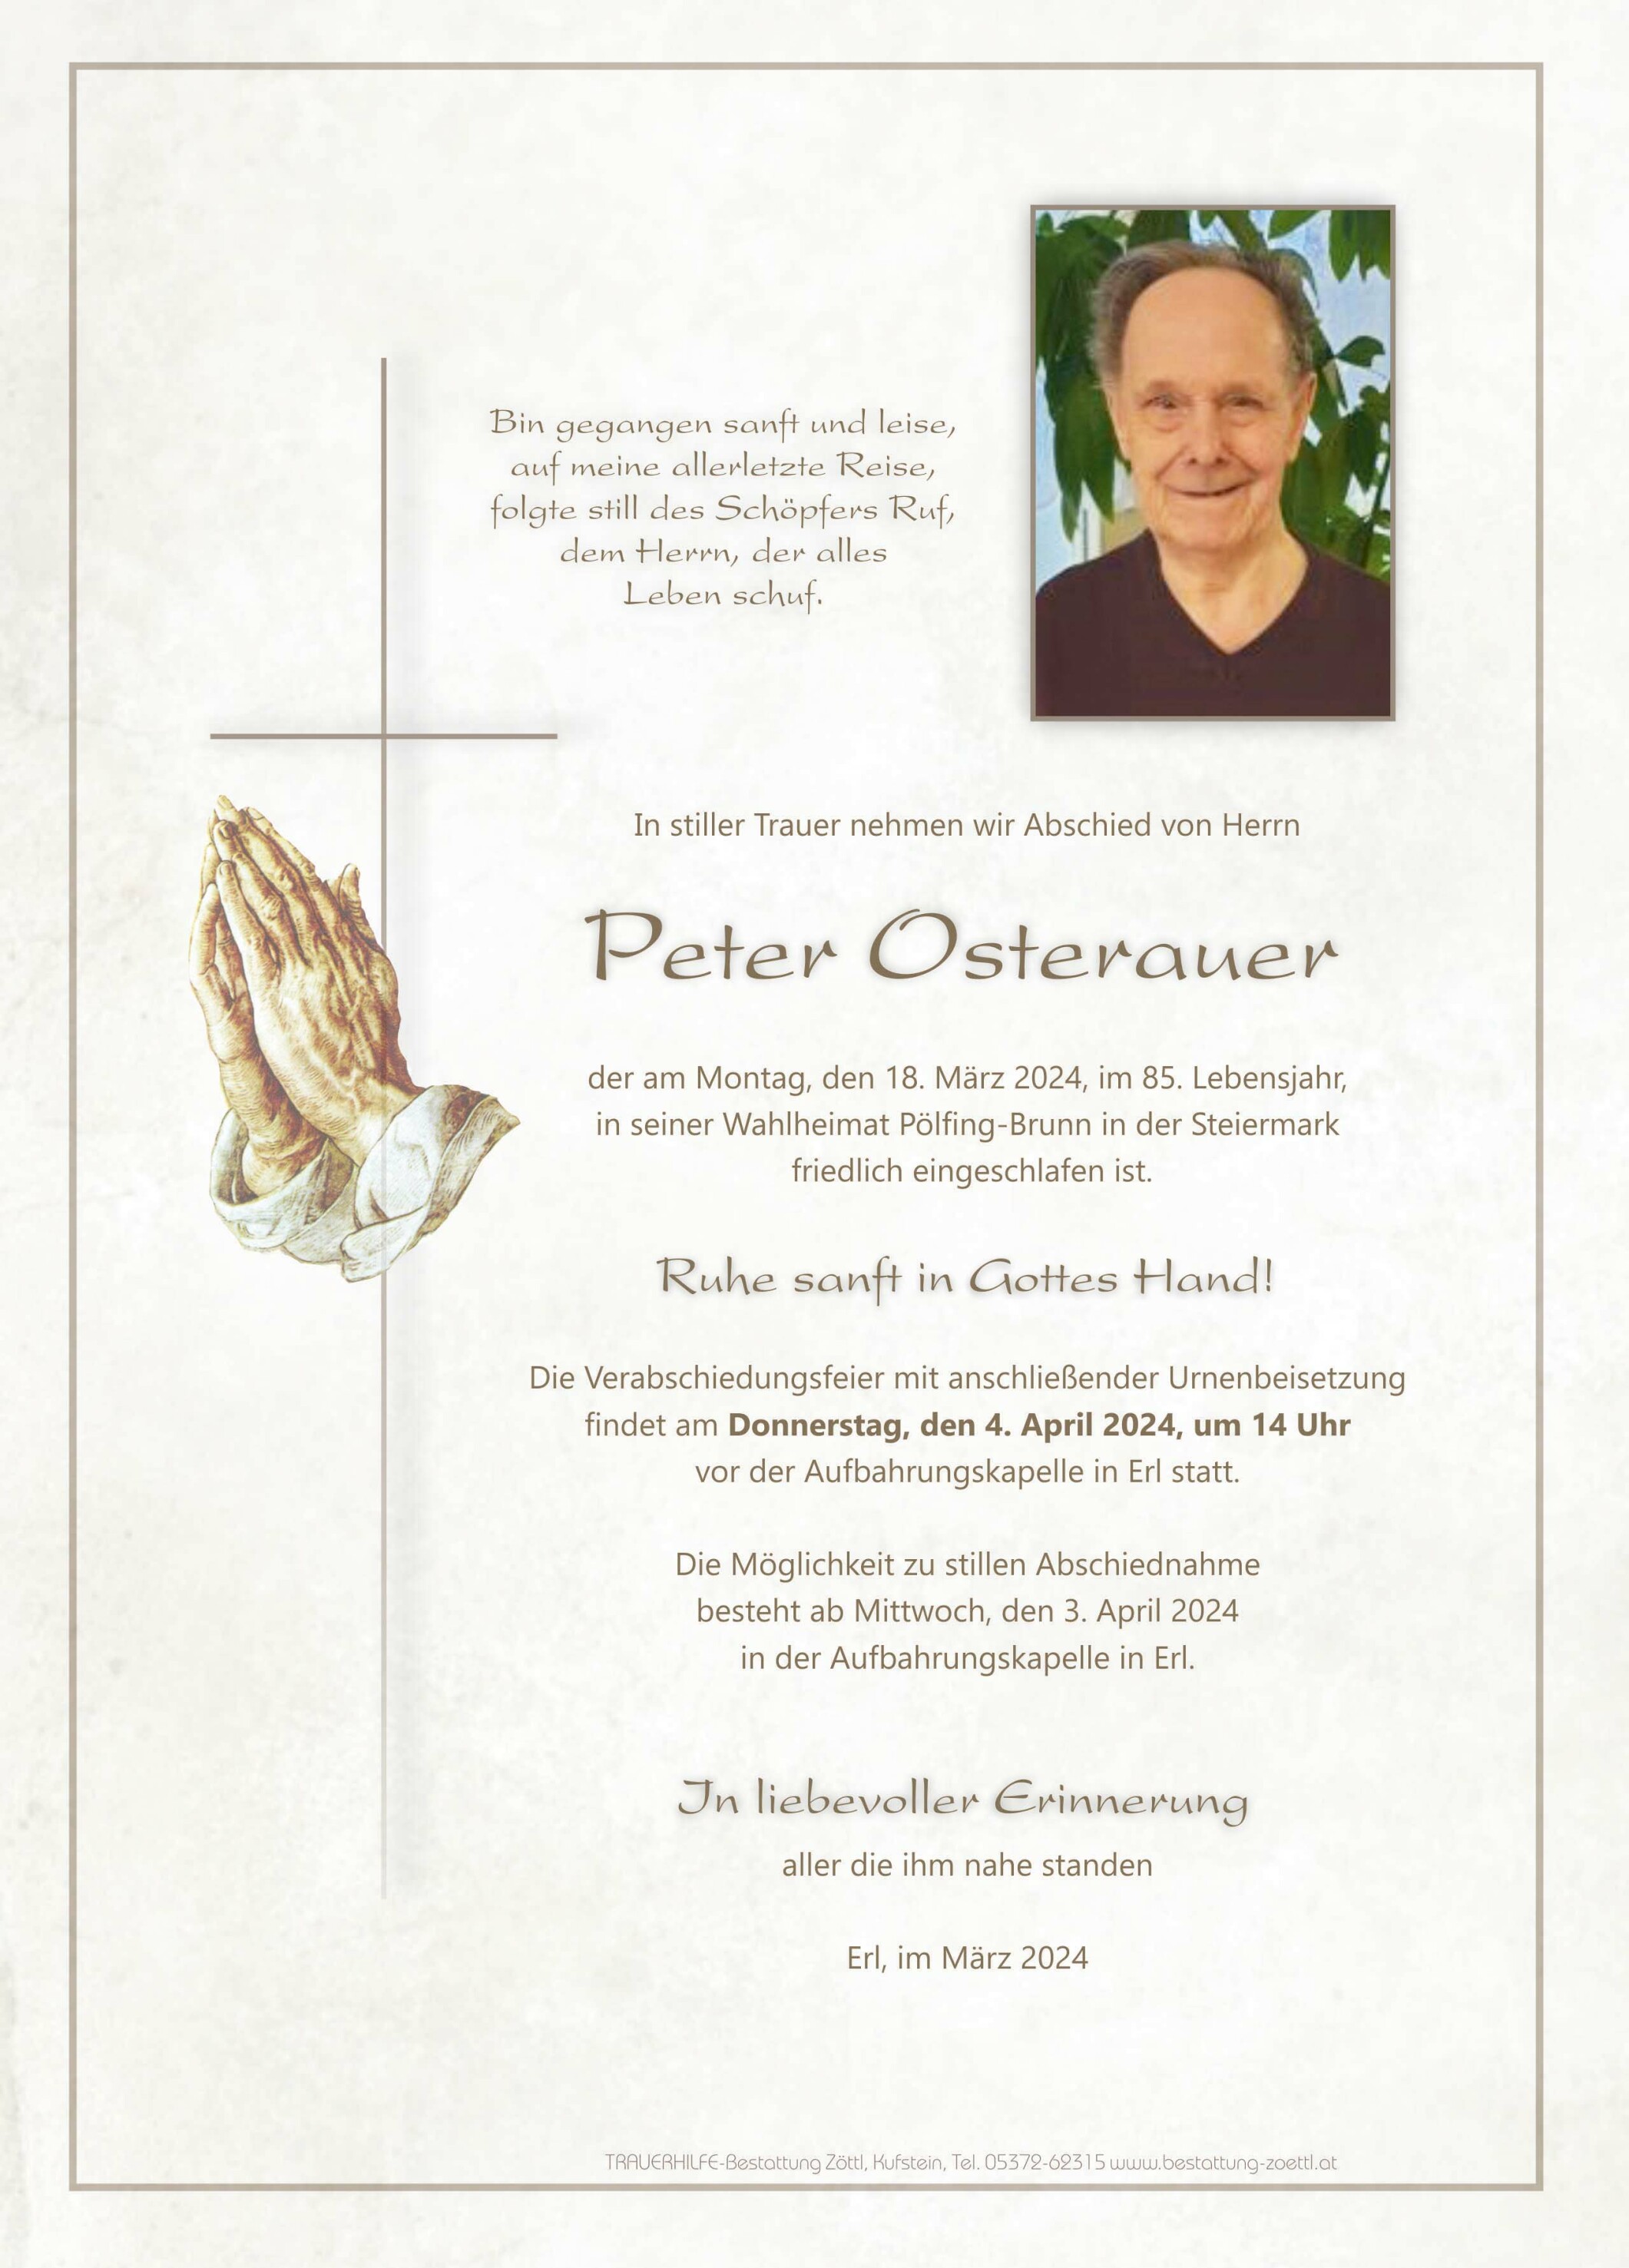 Peter Osterauer